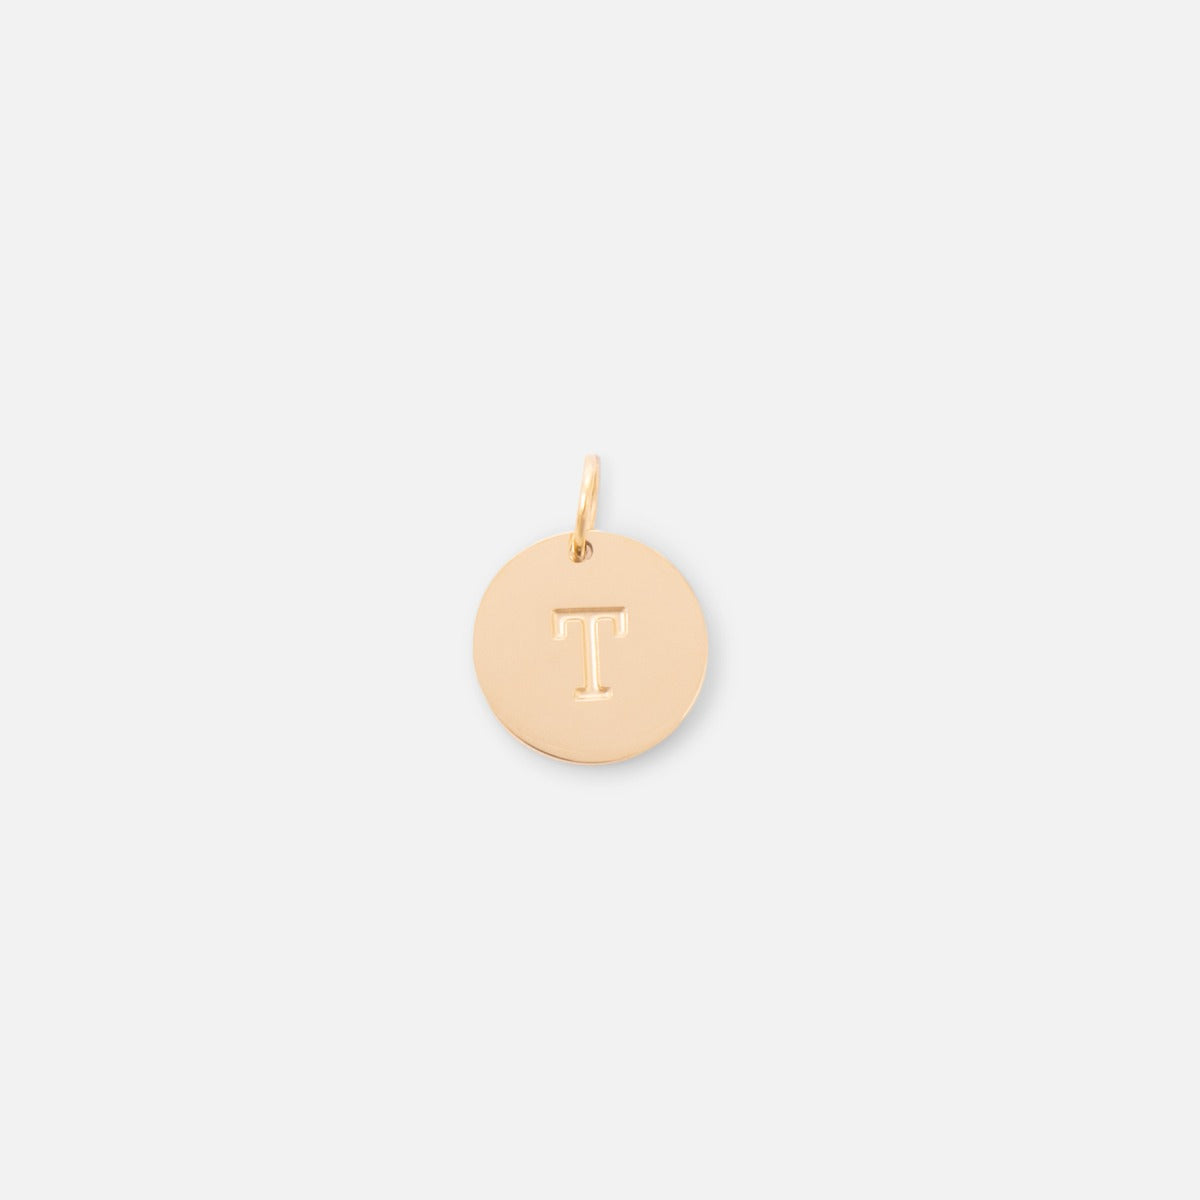 Petite breloque dorée symbolique gravée lettre de l’alphabet "t"